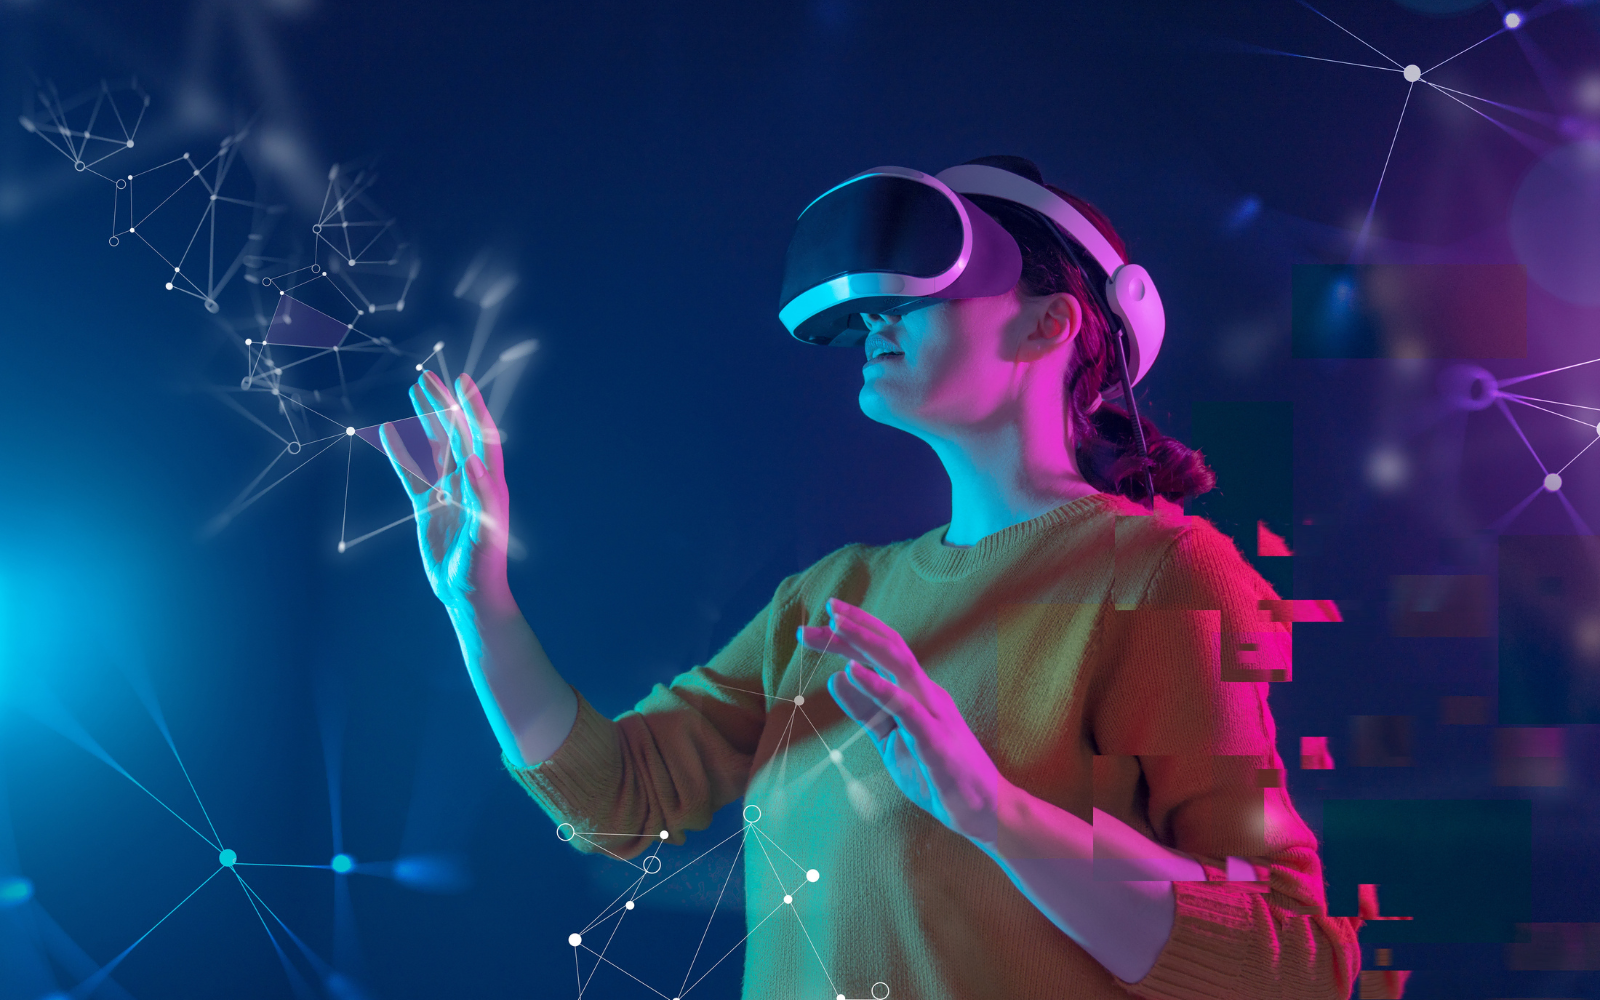 图片展示一位女性佩戴虚拟现实头盔，正专注地用手指触碰虚构的三维数字界面，周围充满科技感的光线与图形。